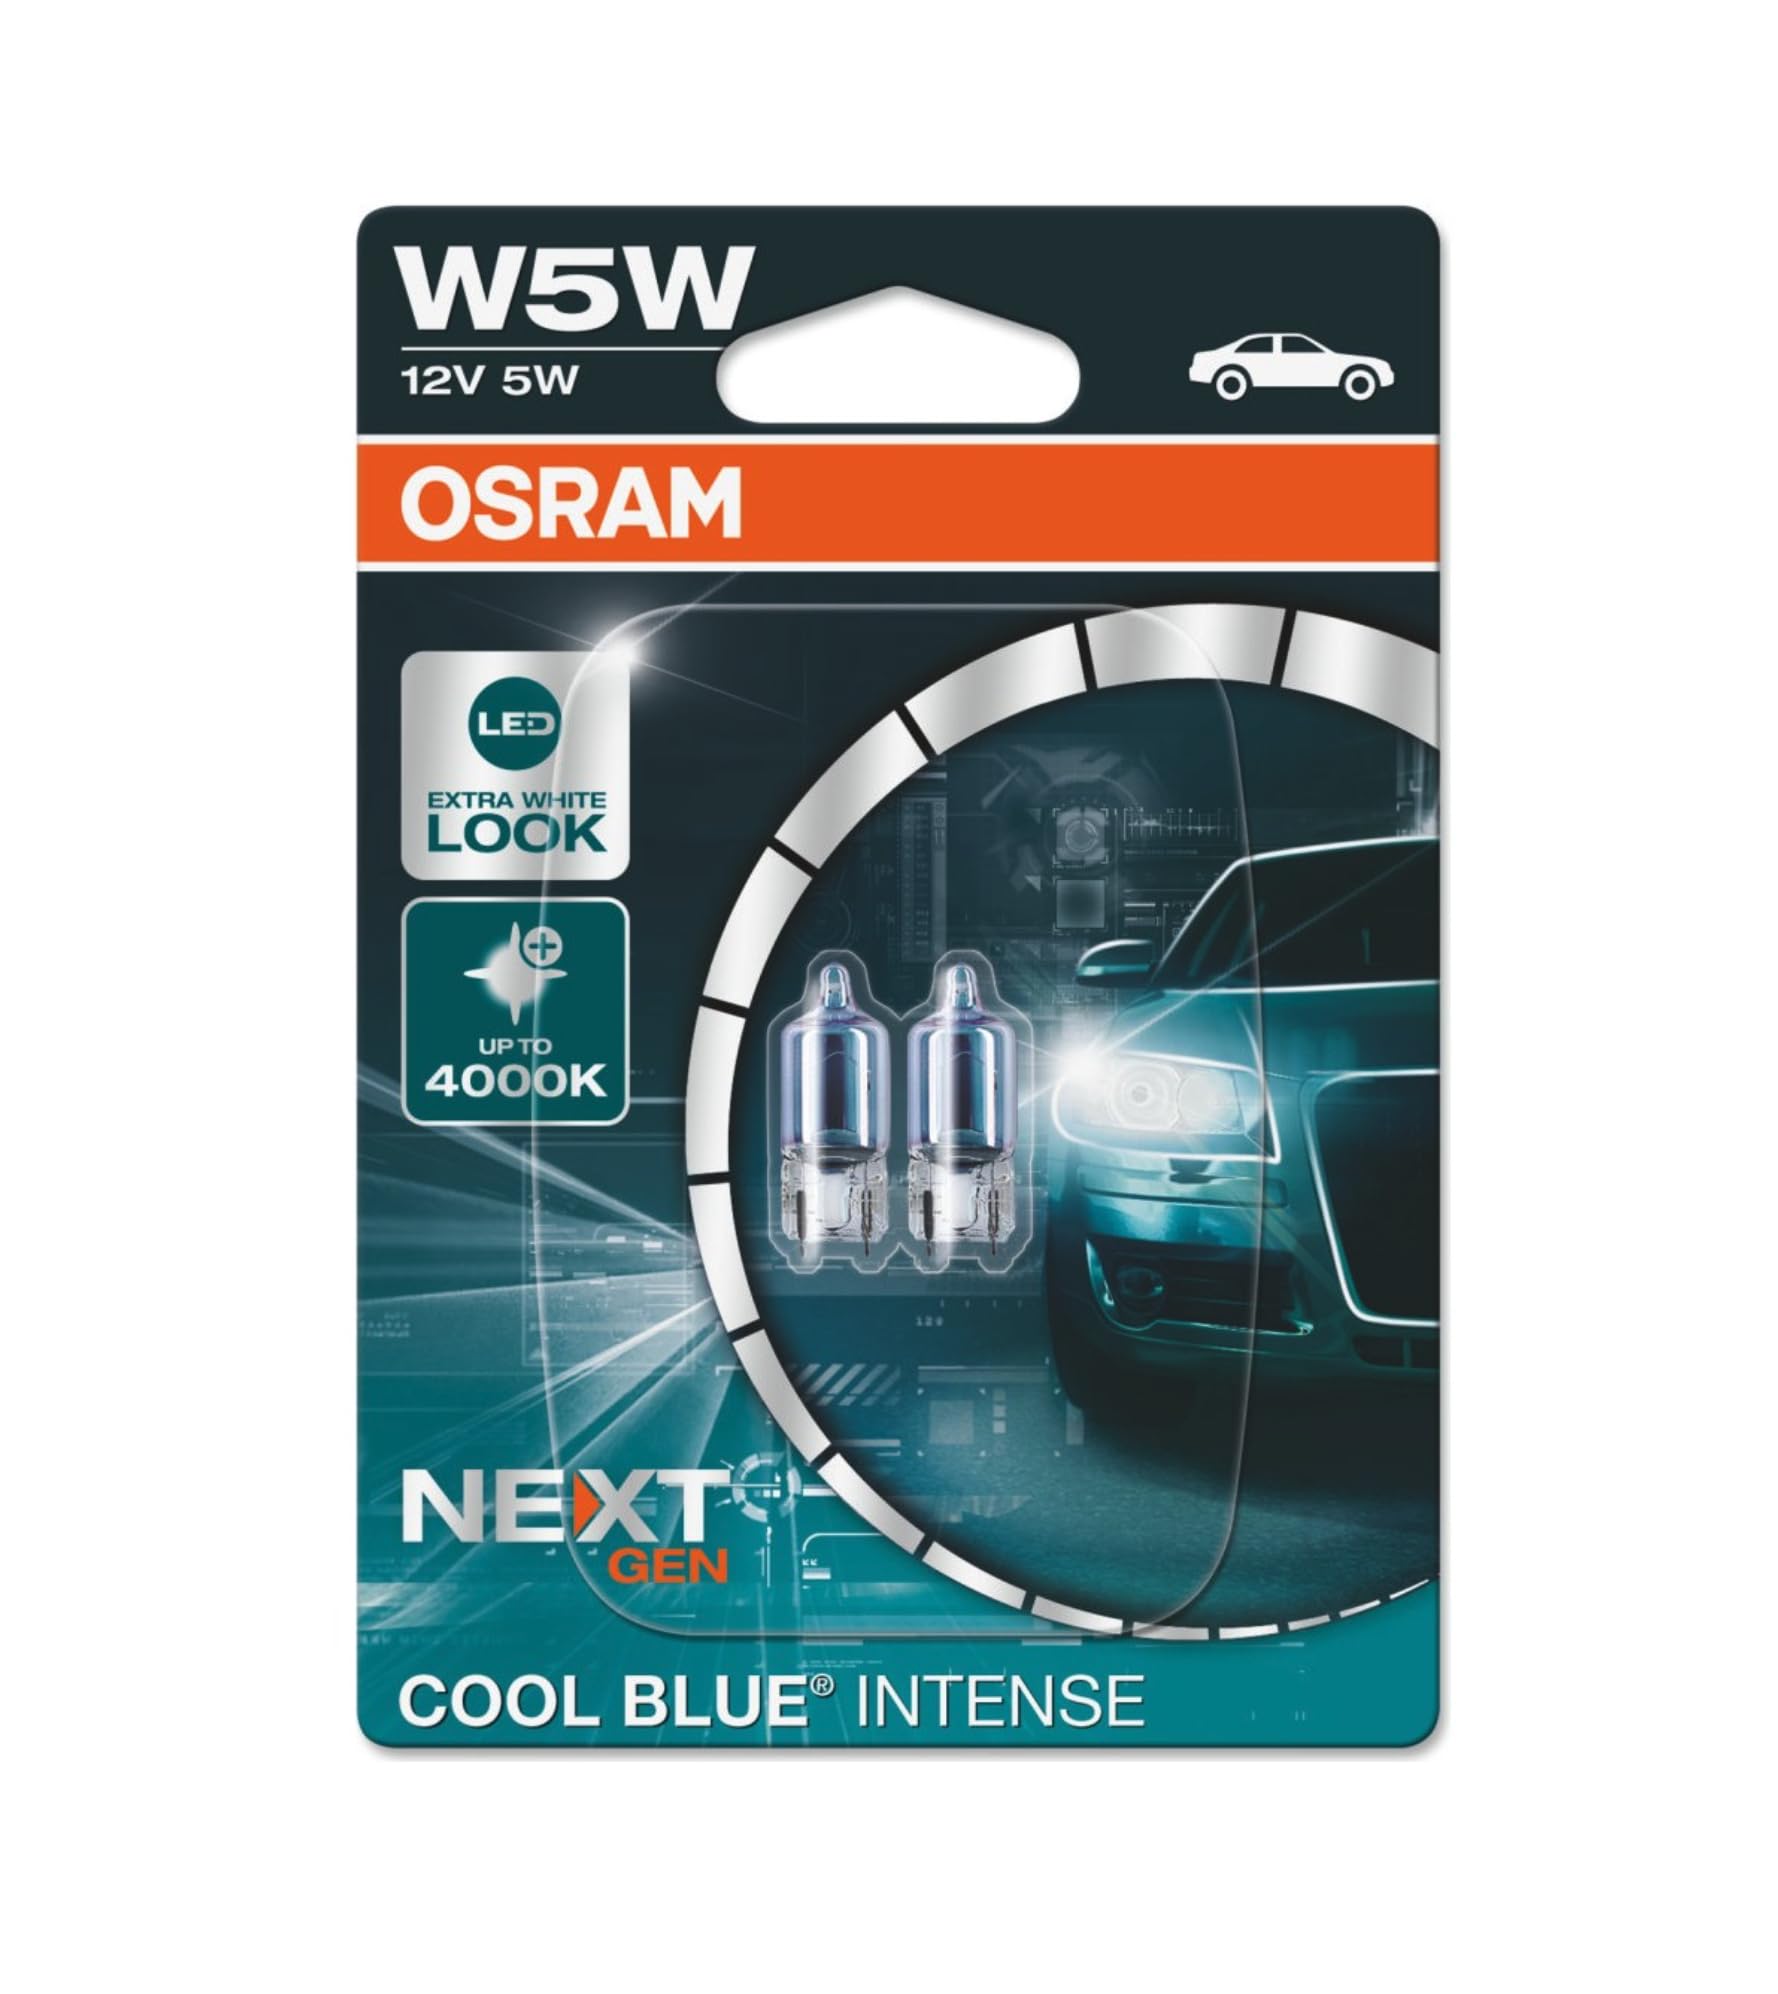 OSRAM COOL BLUE INTENSE W5W, bis zu 4.000 K, Halogensignallampe, Doppelblister (2 Lampen), 2825CBN-02B von Osram